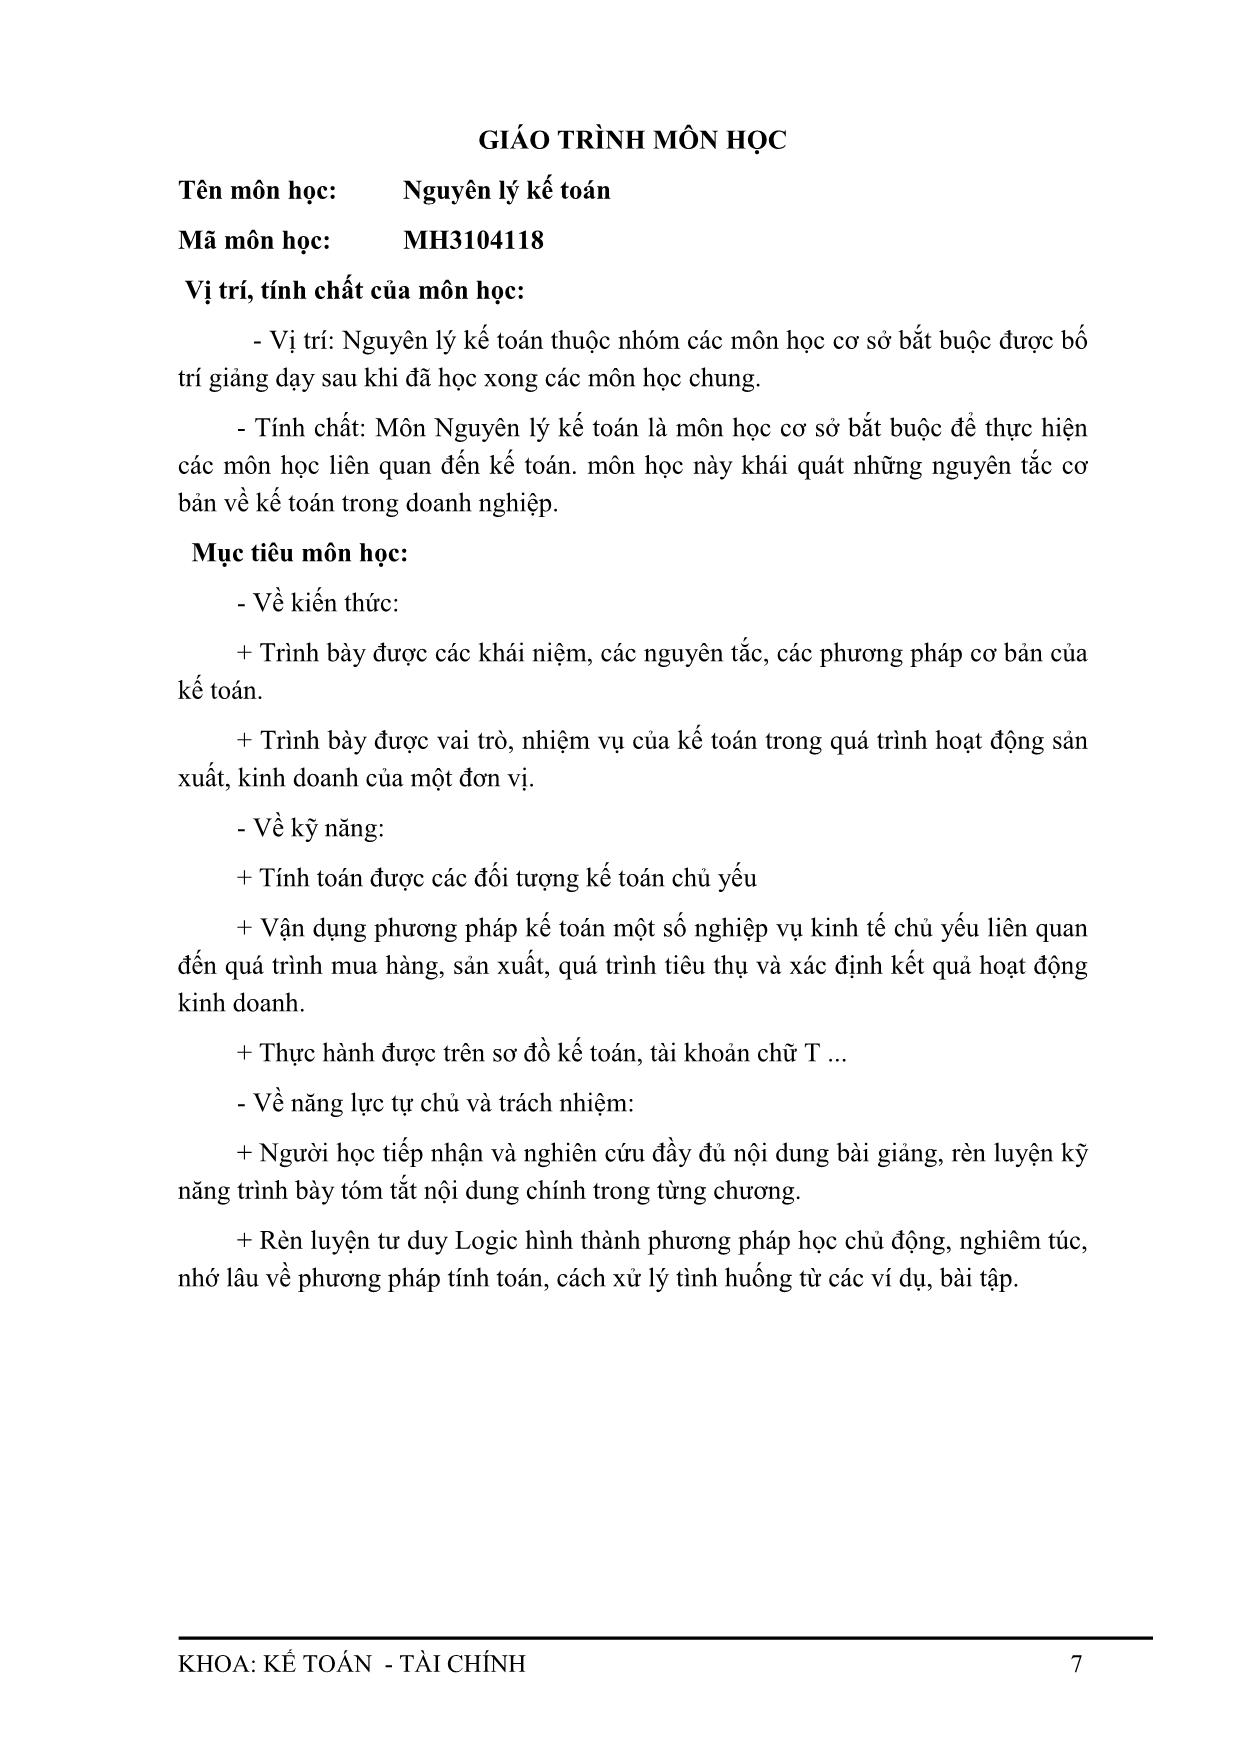 Giáo trình Nguyên lý kế toán trang 10